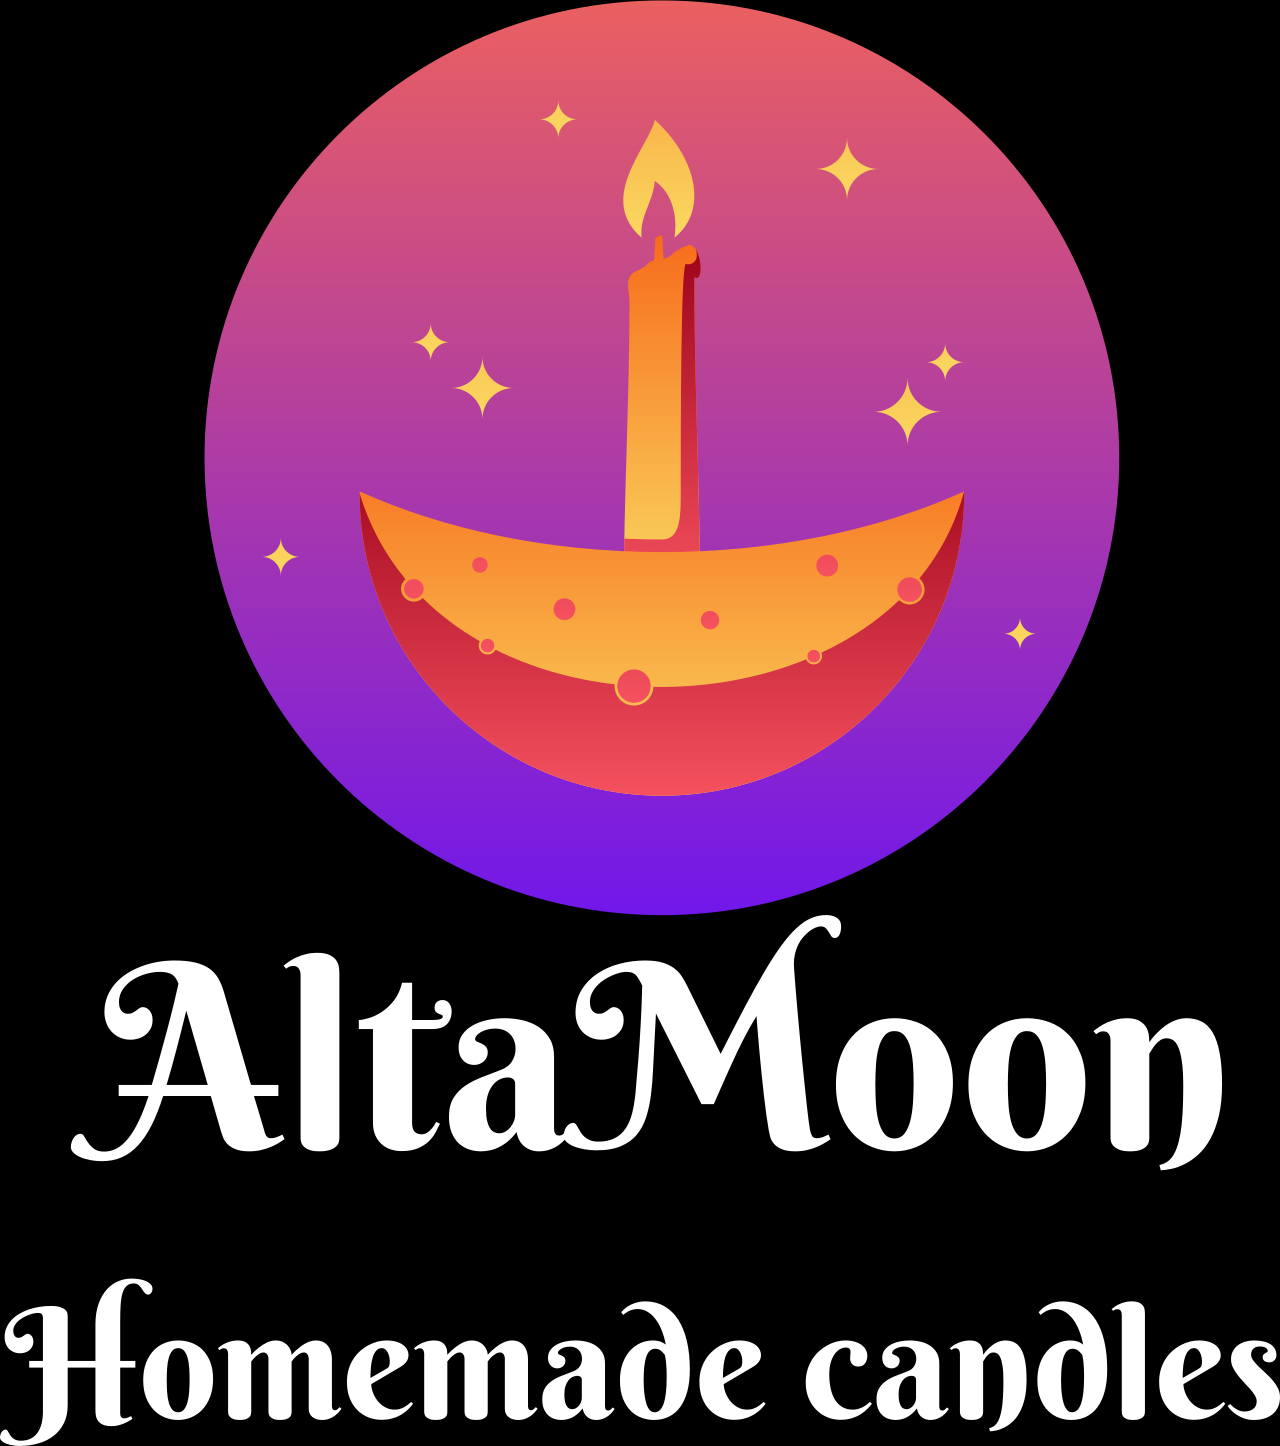 AltaMoon's web page